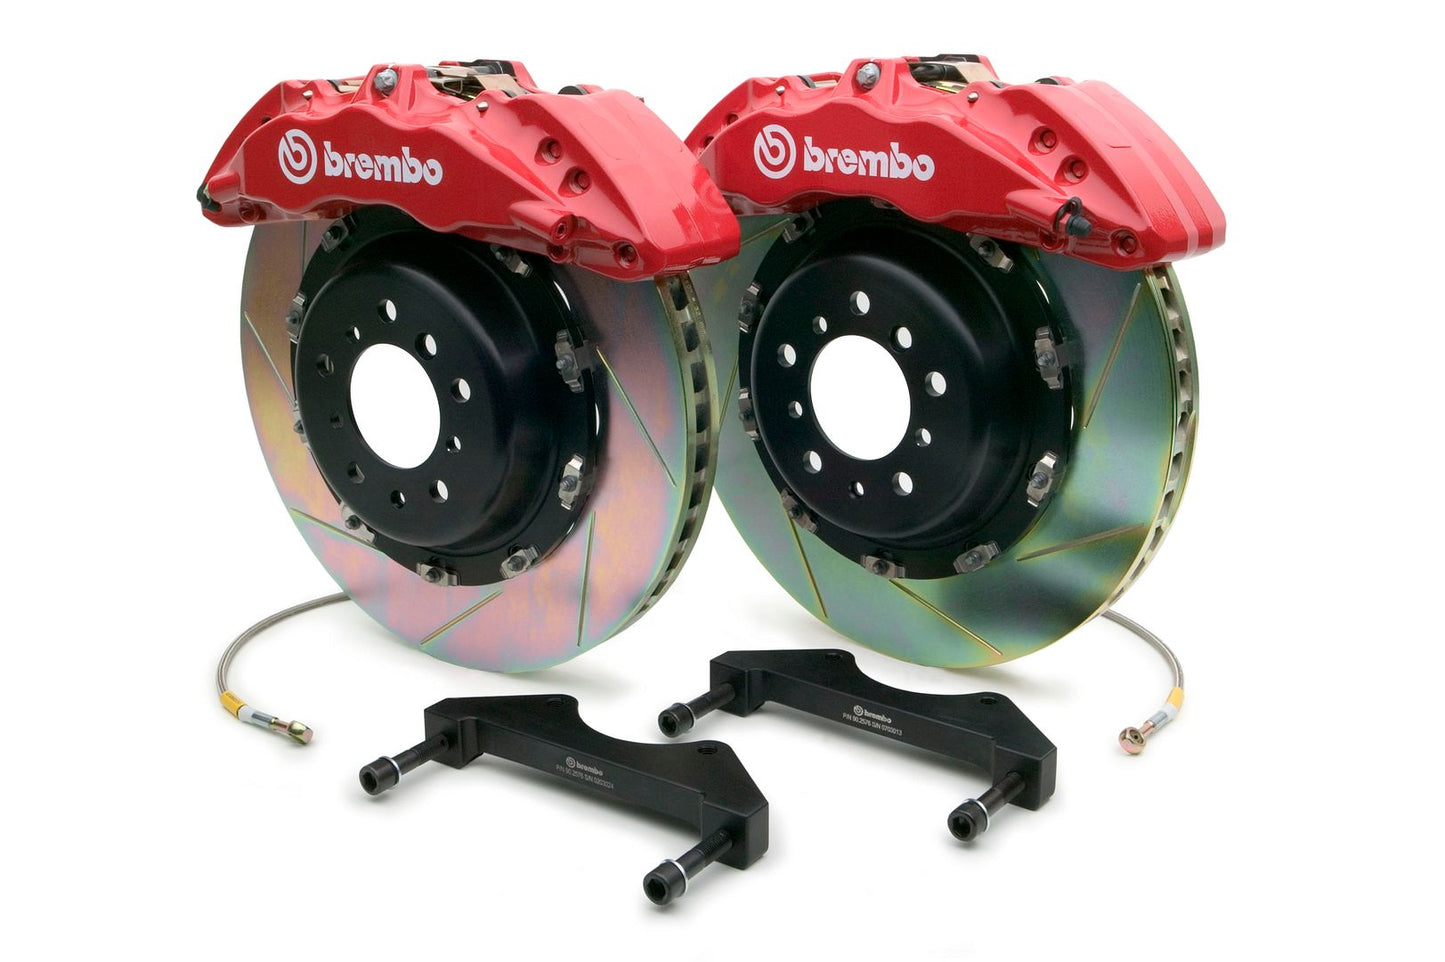 Brembo Front GT BBK Brake 6pot Caliper Red 380x34 Slot Disc Rotor for QX56 11-13